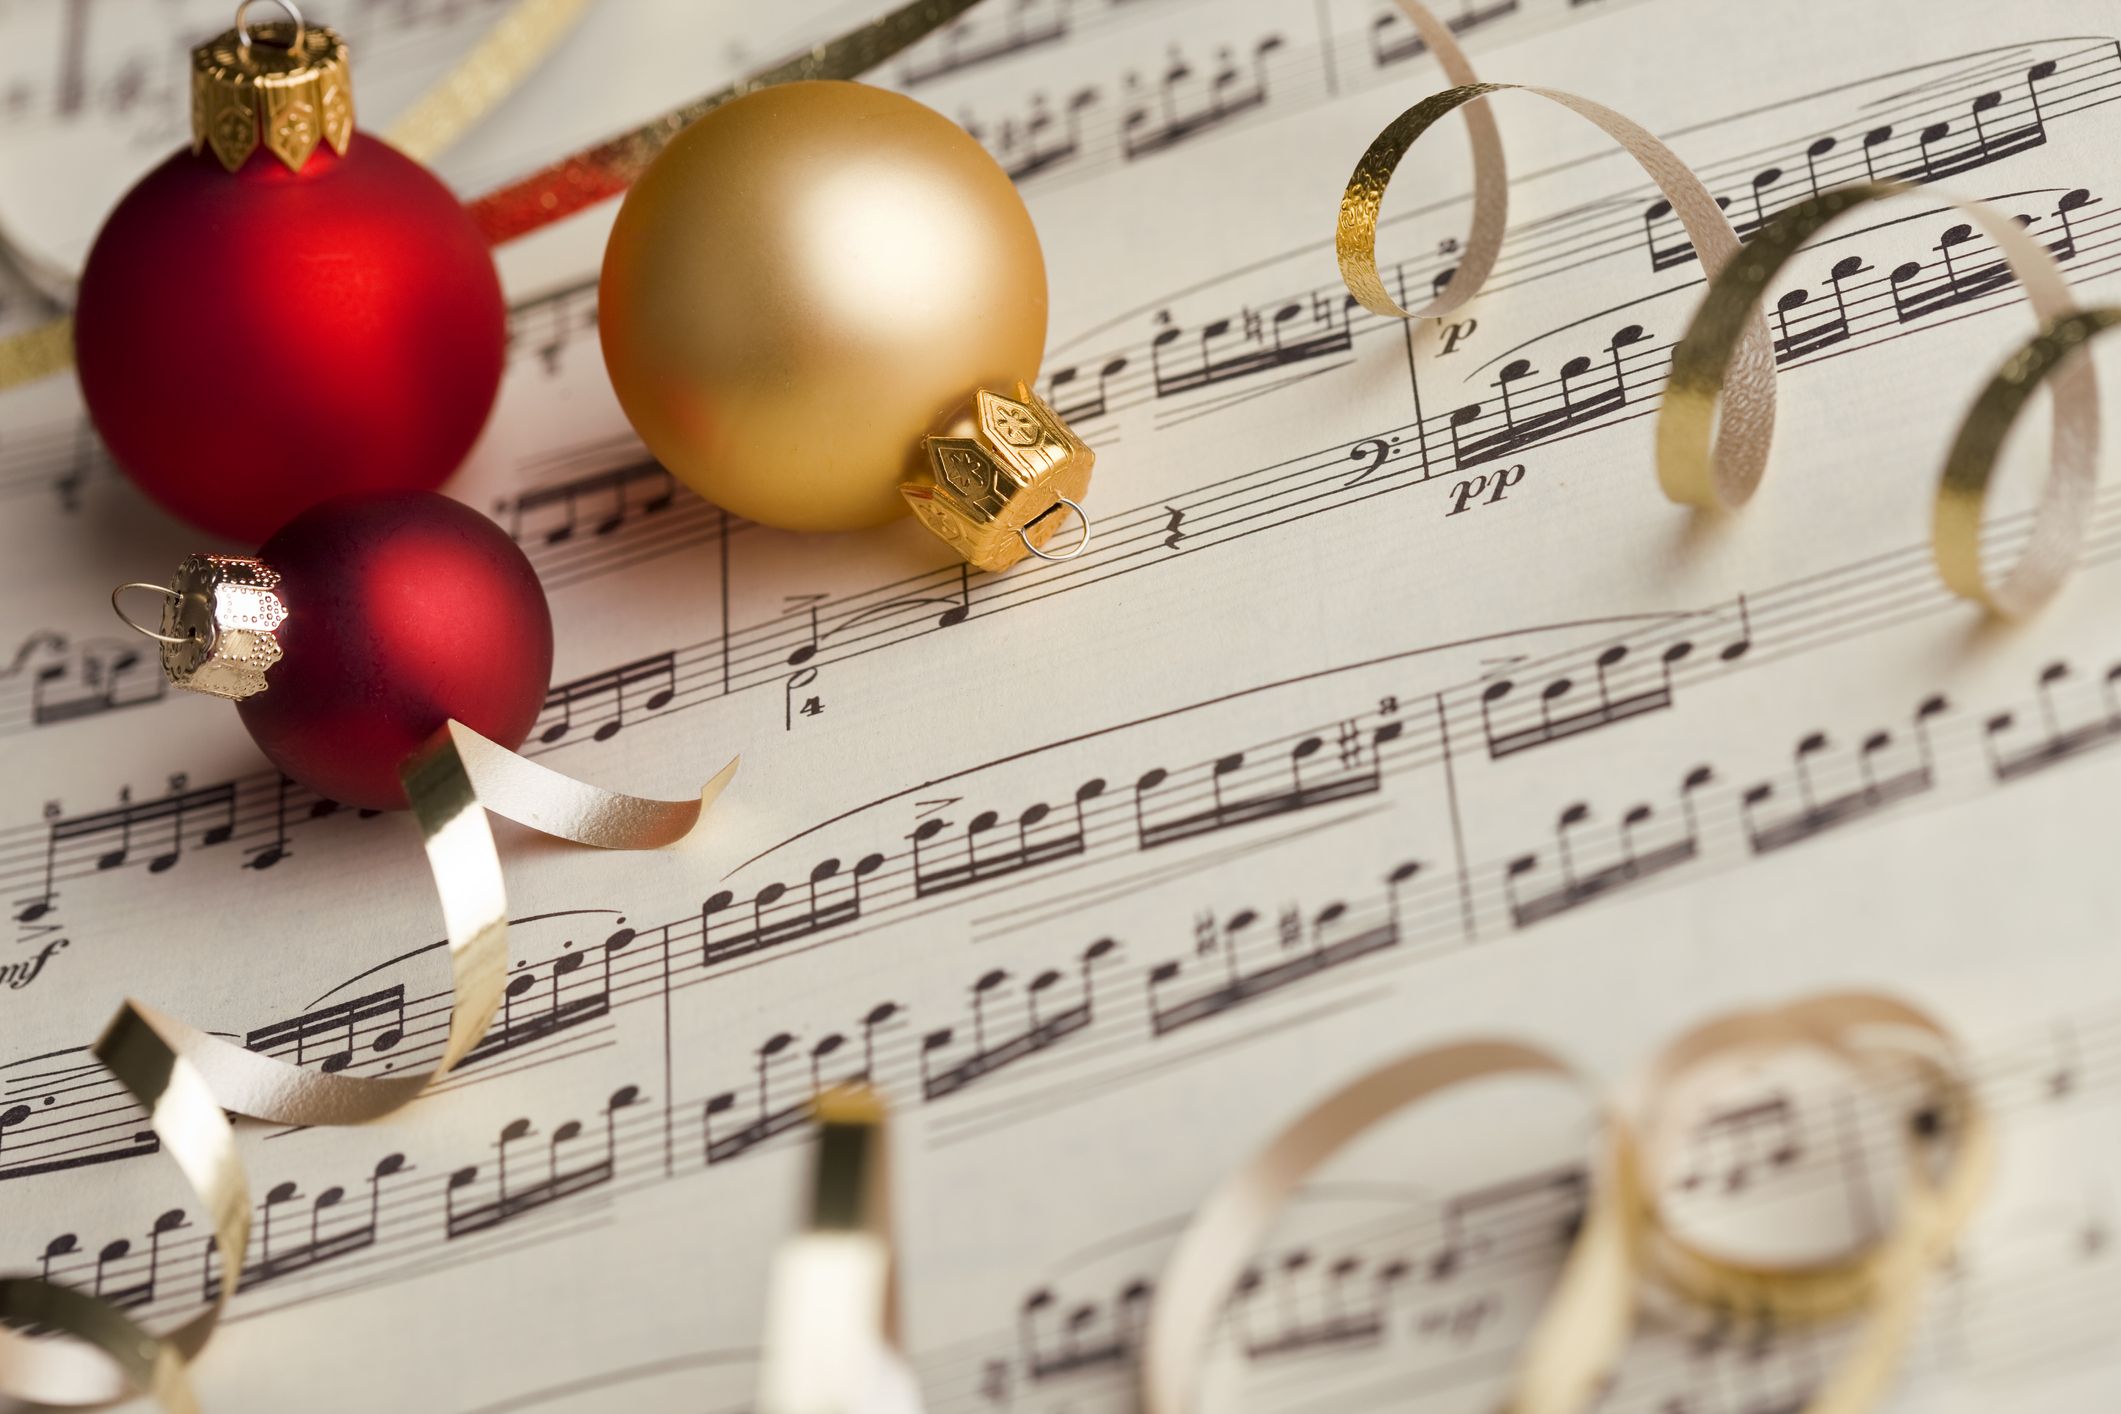 Bạn đã sẵn sàng để đón một mùa Giáng sinh truyền thống nồng ấm chưa? Hãy nghe những bài hát Giáng sinh quen thuộc để thêm ấm áp cho không khí lễ hội nhé! Tận hưởng không gian yên bình và ngập tràn cảm xúc bằng những giai điệu đầy ý nghĩa.